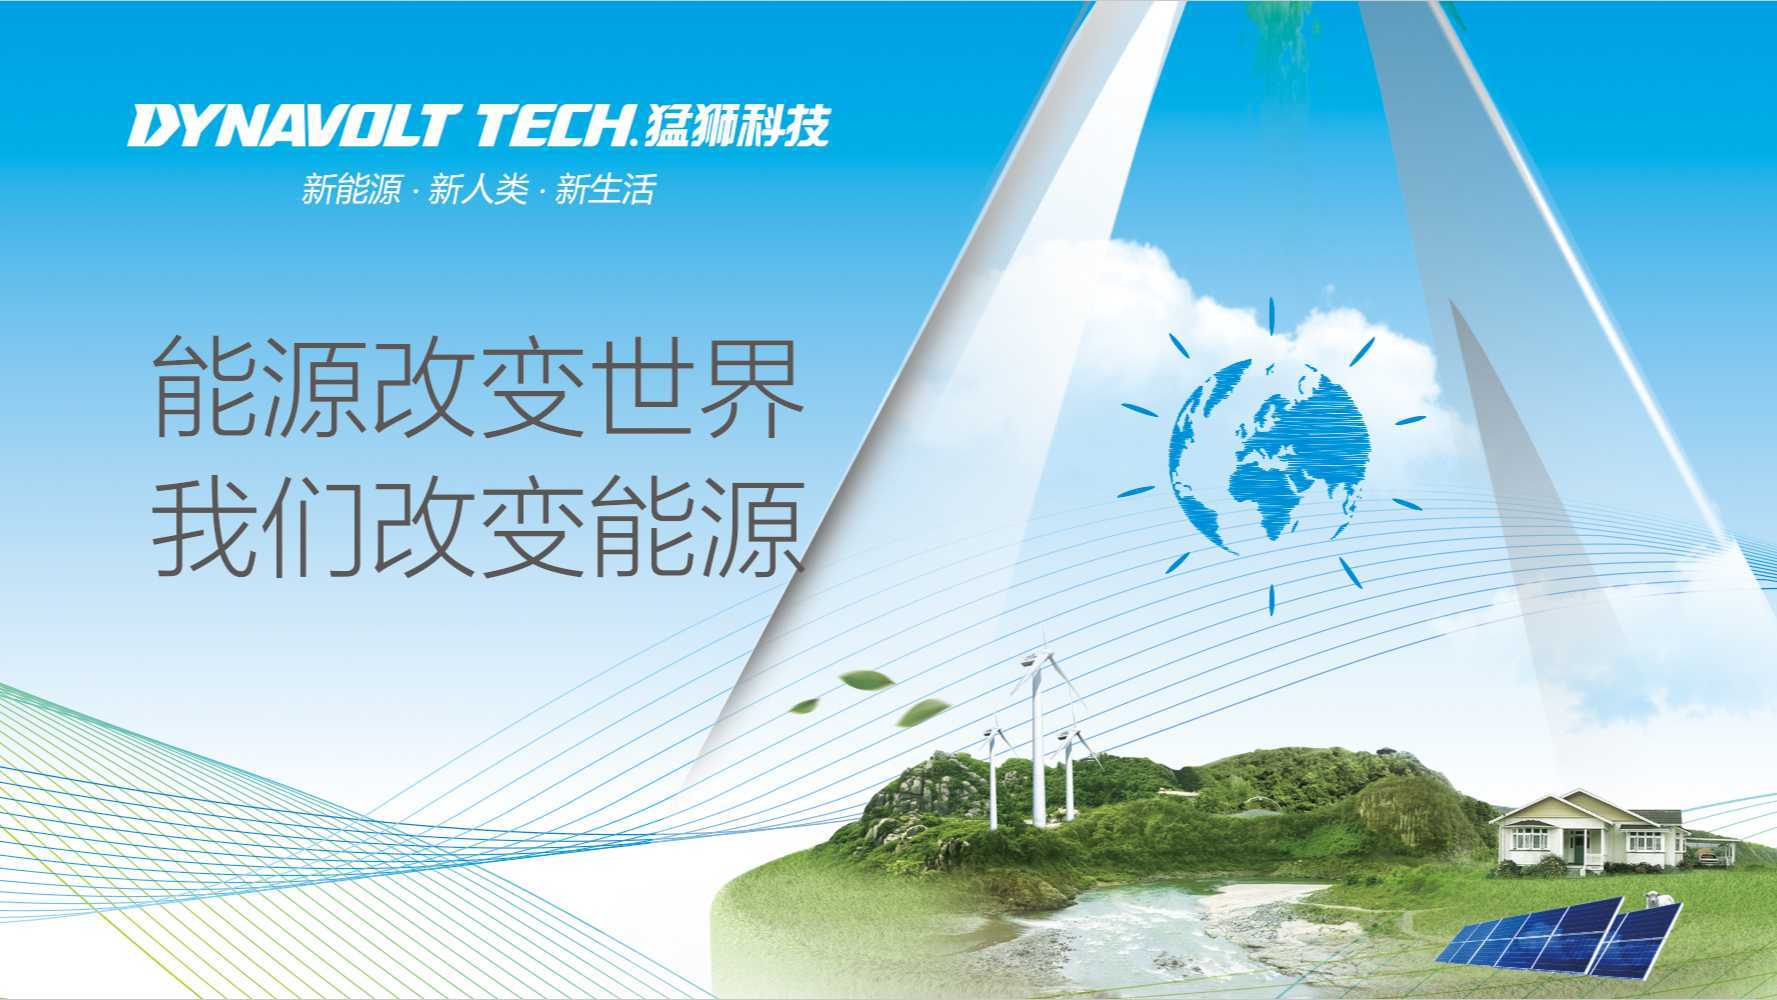 全球清洁电力产业领导者~猛狮新能源科技股份公司中文宣传片-意次元